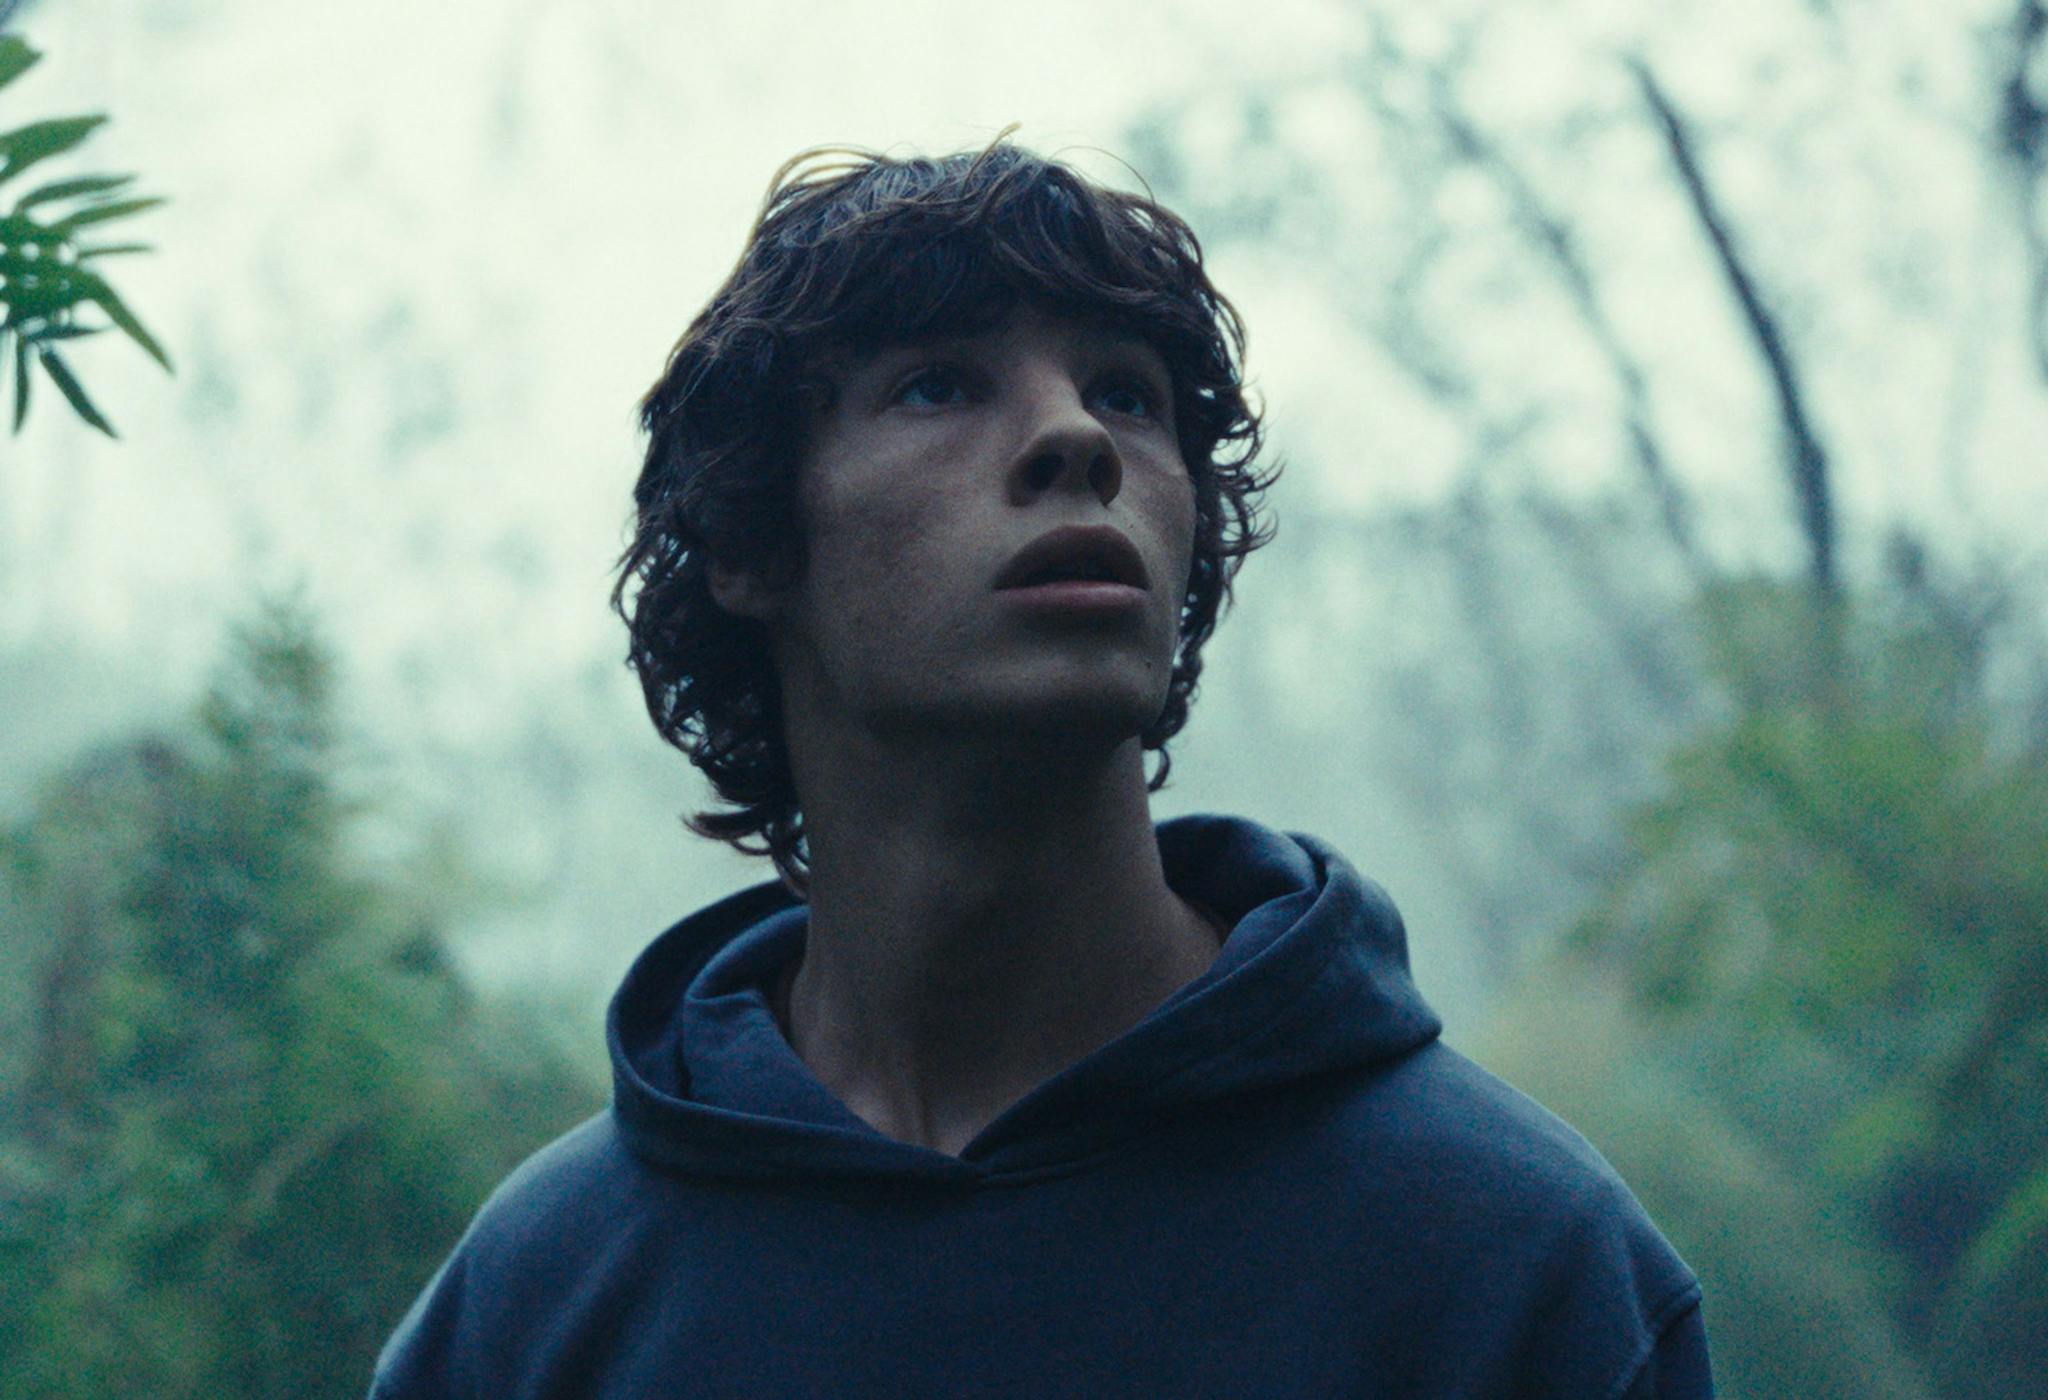 Paul Kircher interpreta a Émile Marindaze, un adolescente que se transforma poco a poco en lobo en 'El reino animal' 